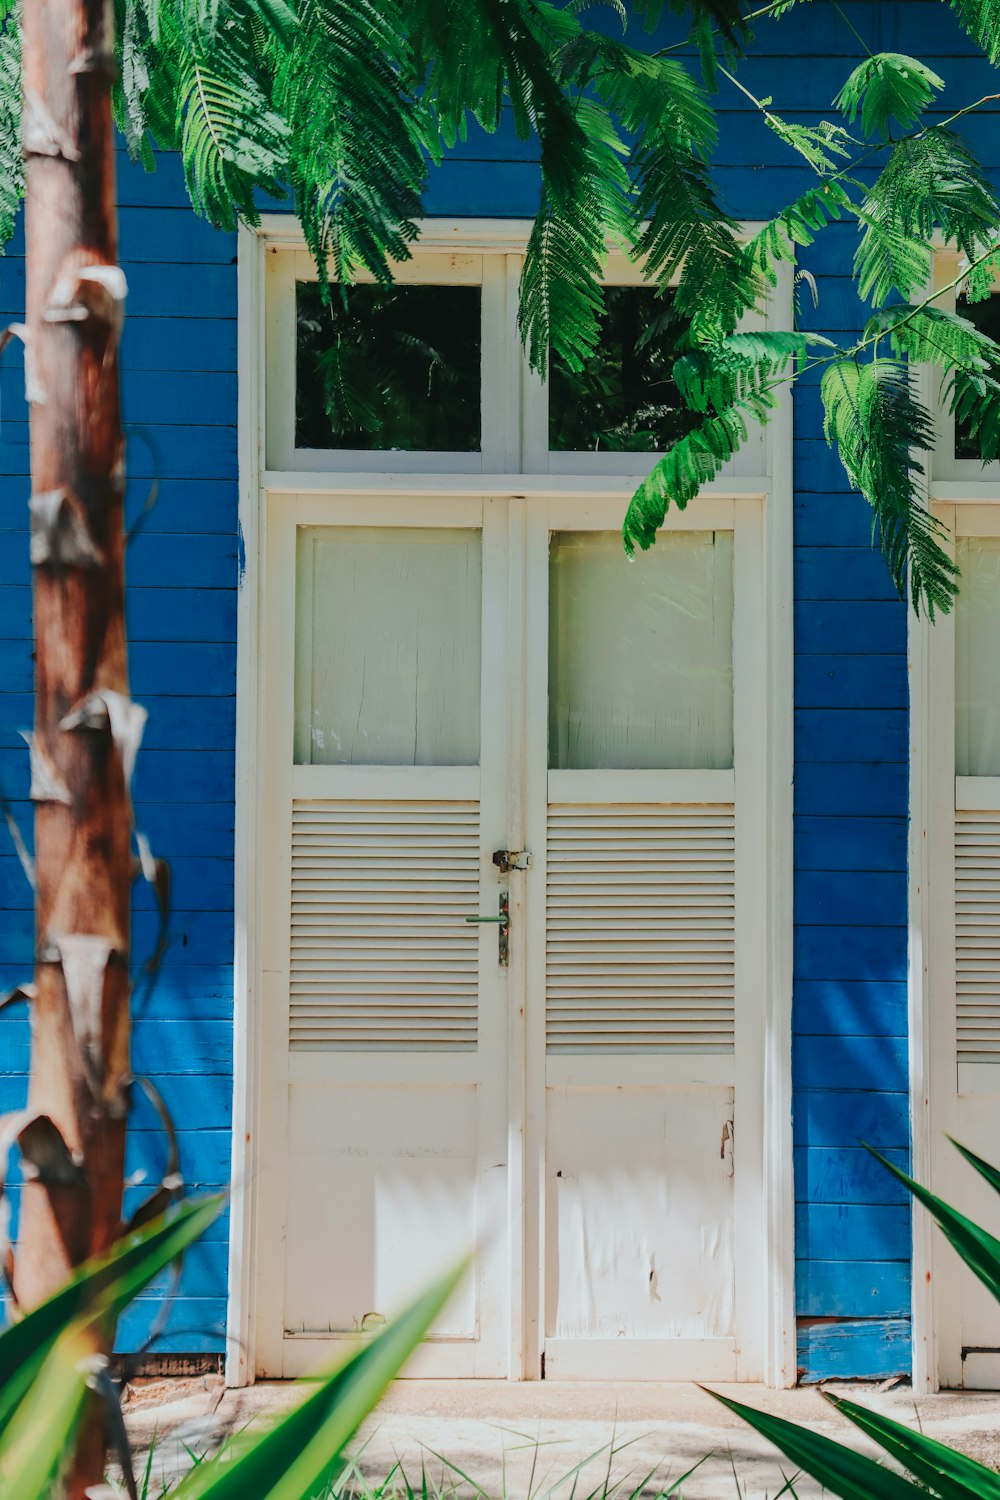 Palmera verde al lado de la puerta de madera azul